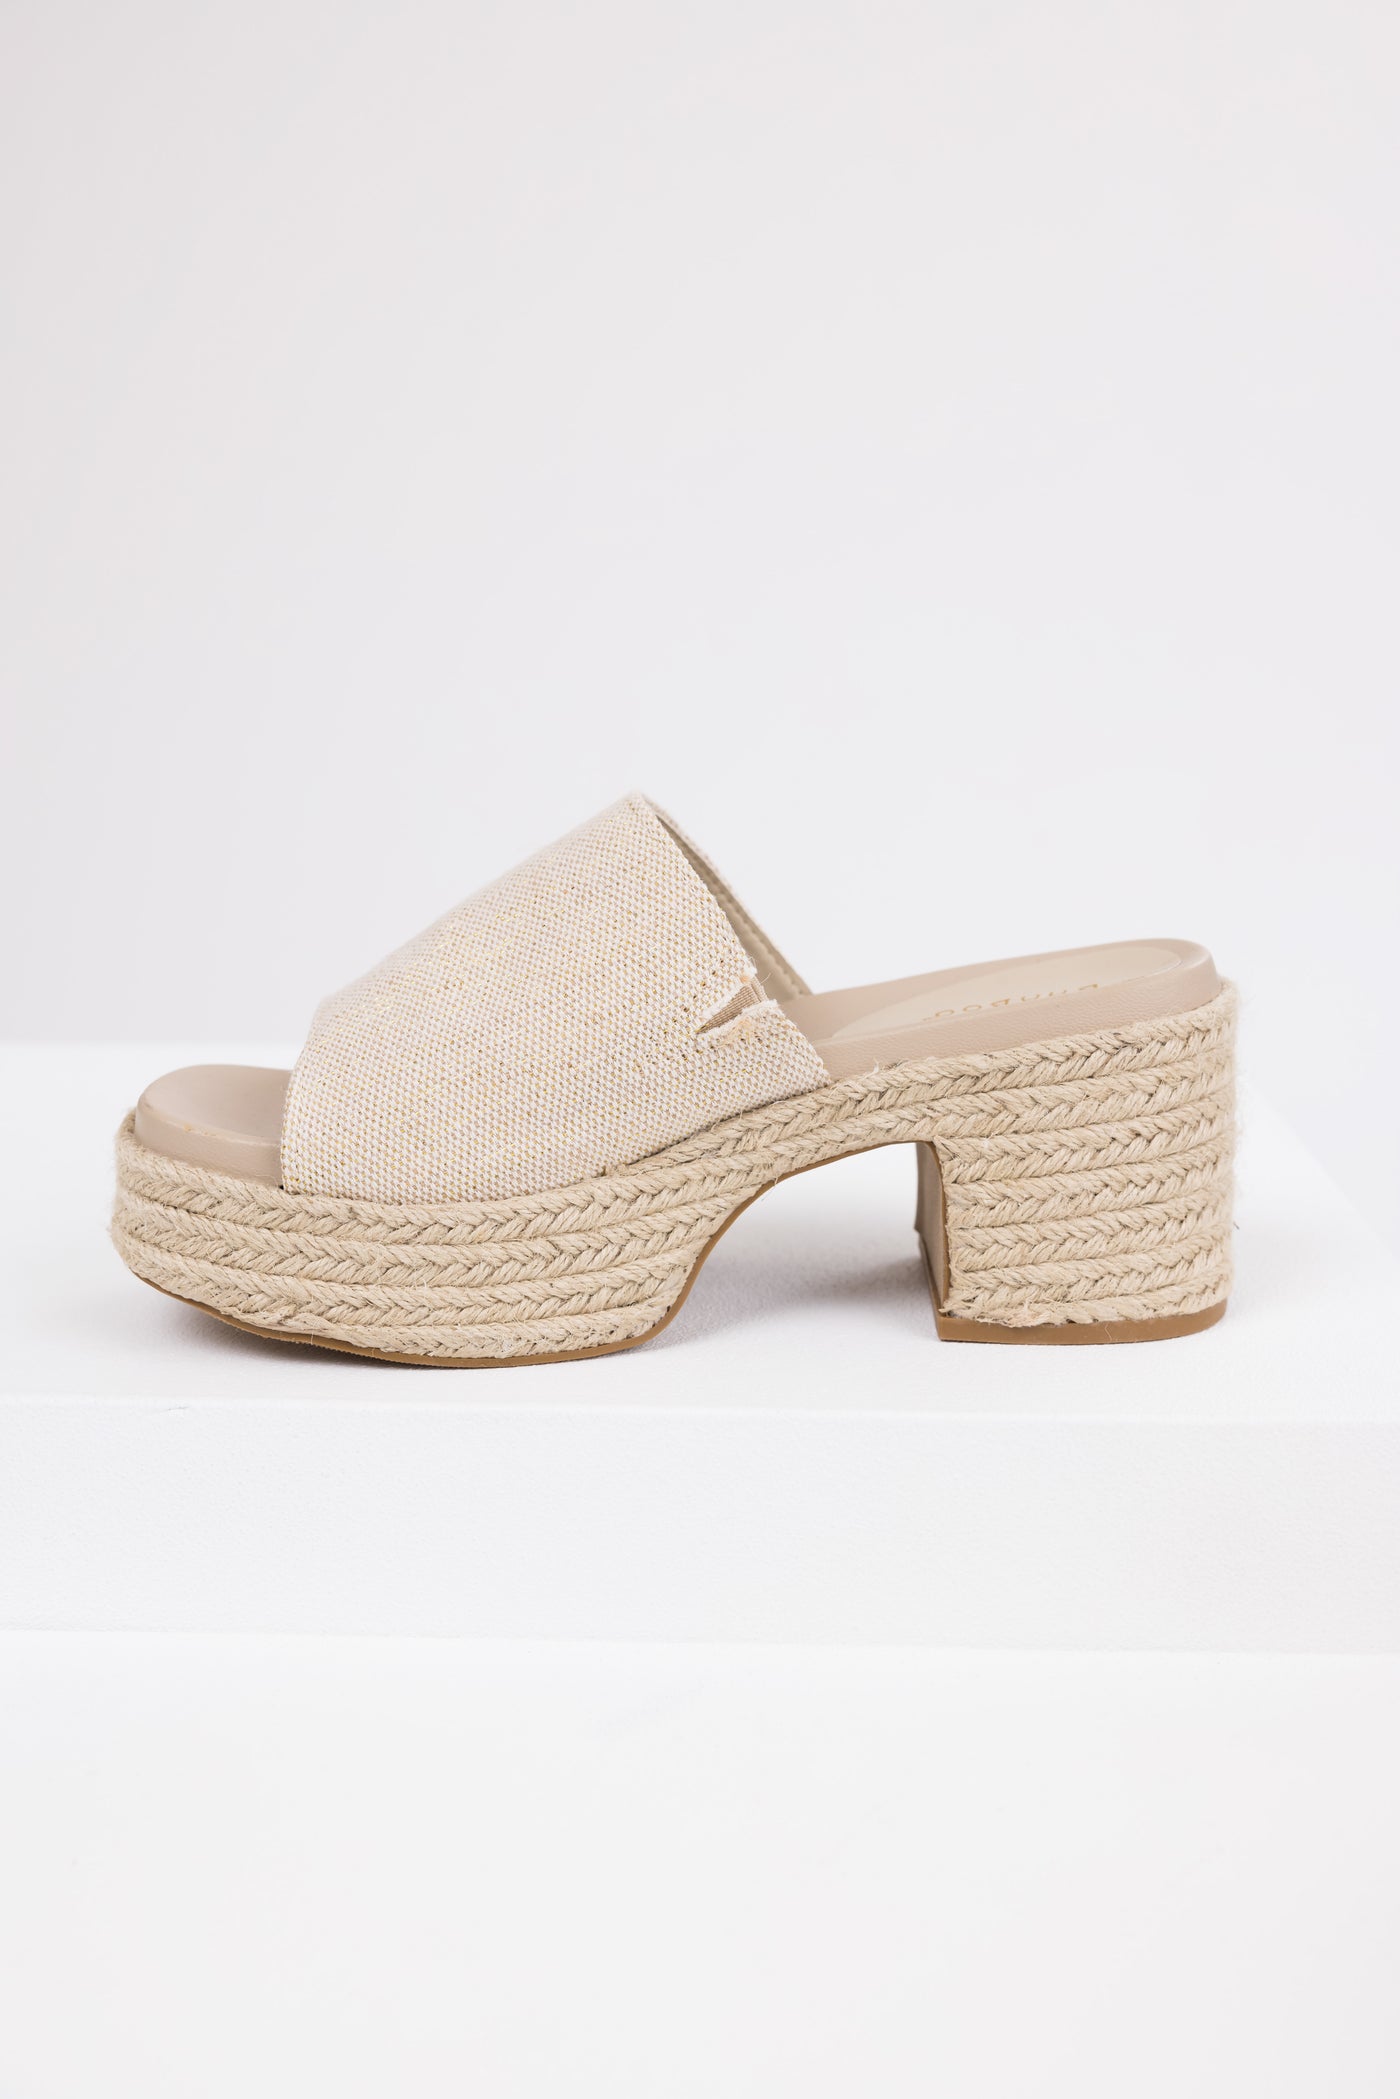 Vanilla Espadrille Platform Heeled Sandals